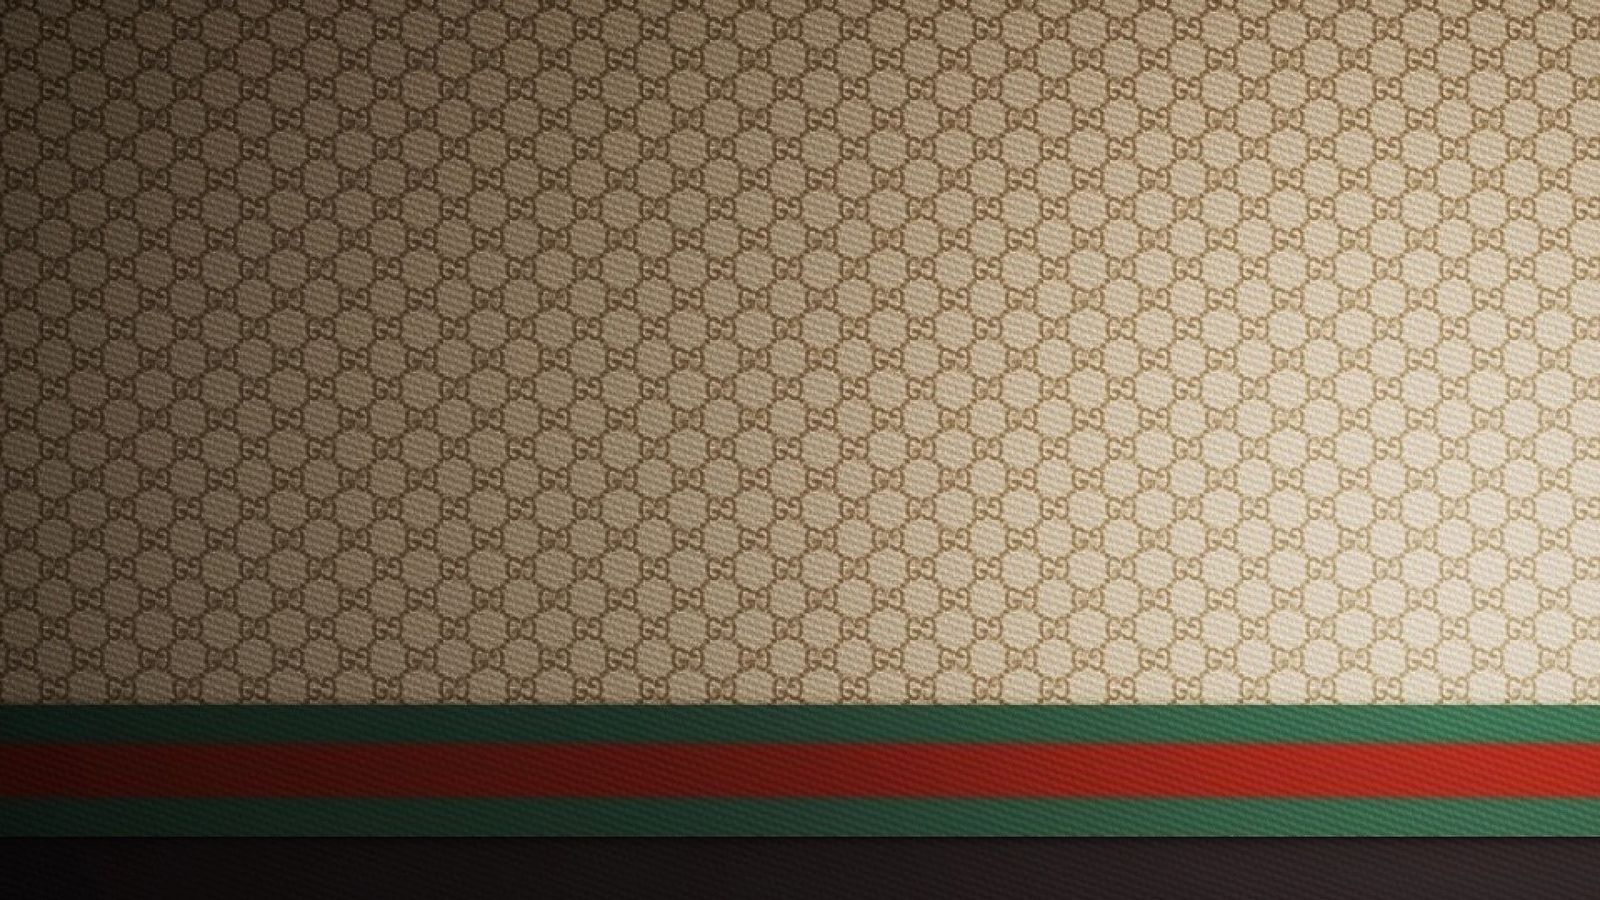 Gucci 1080p Wallpaper Picture Image